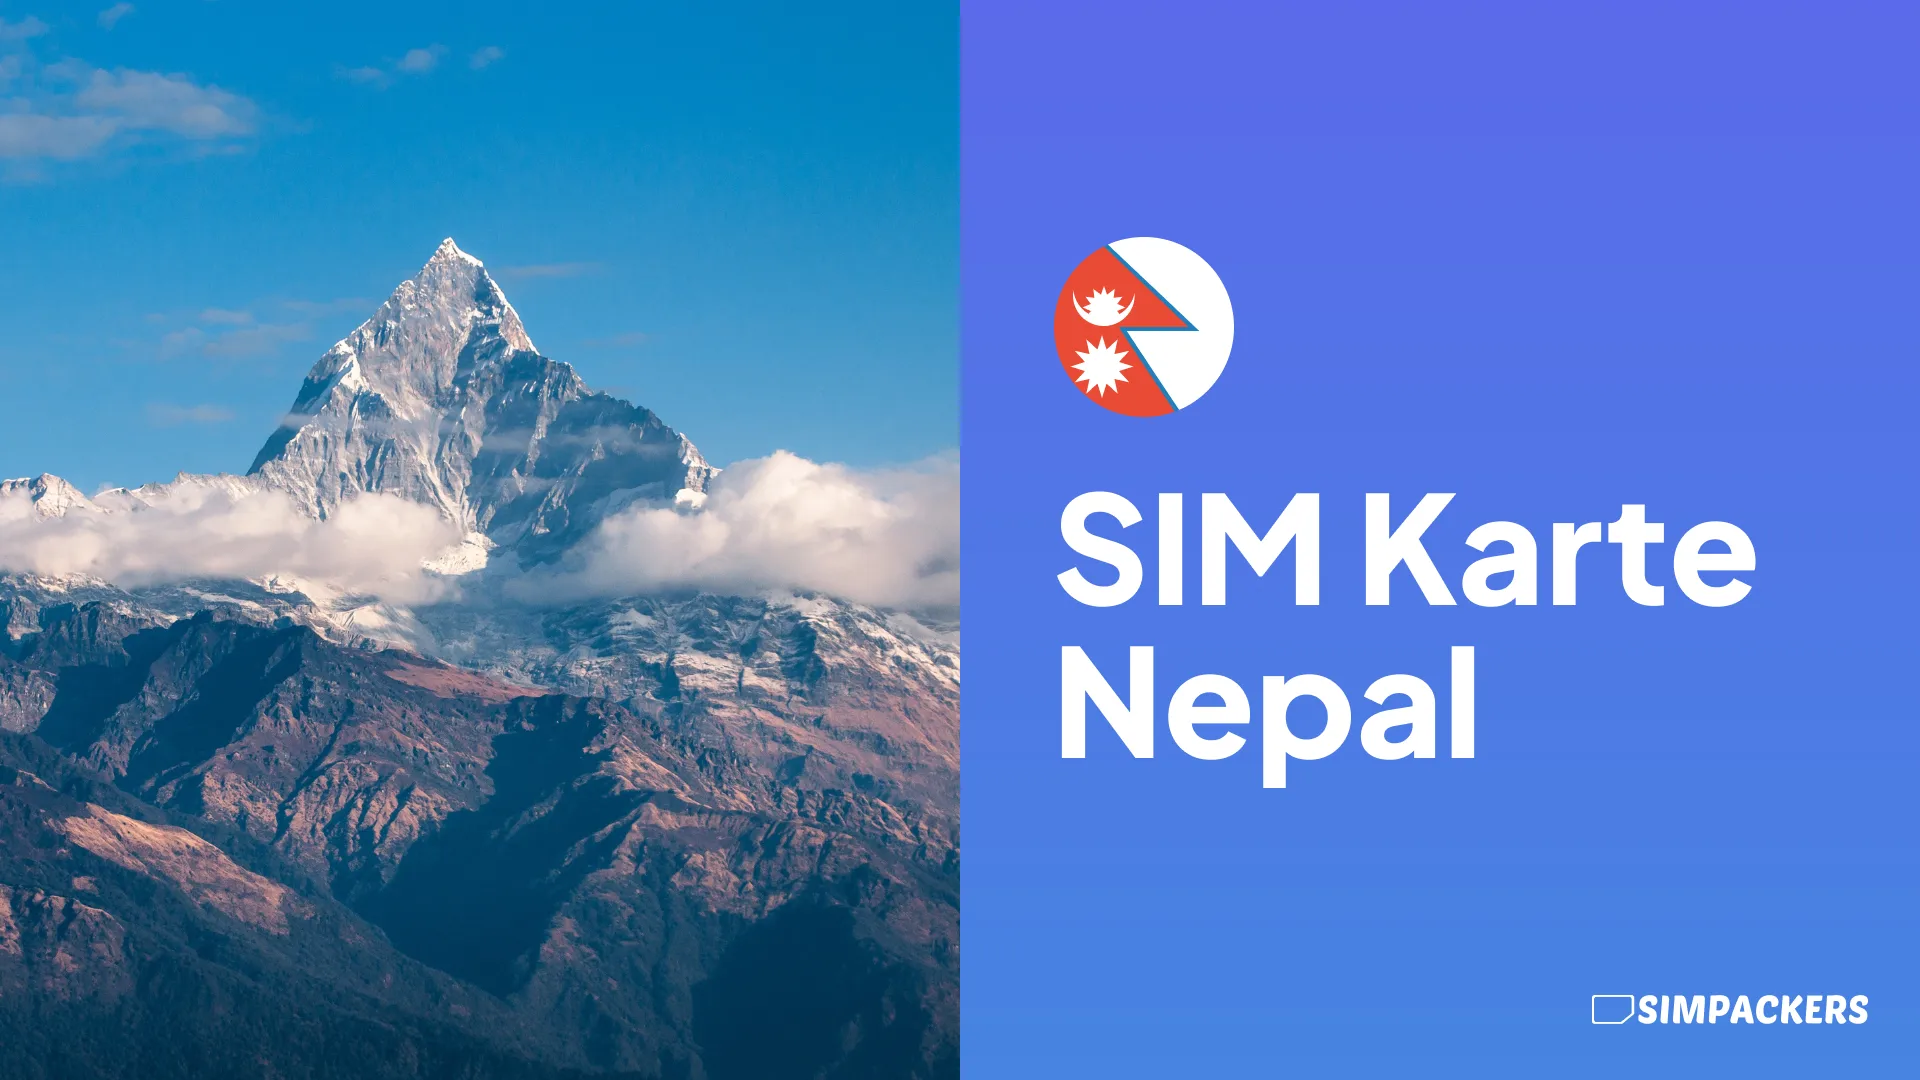 DE/FEATURED_IMAGES/sim-karte-nepal.webp